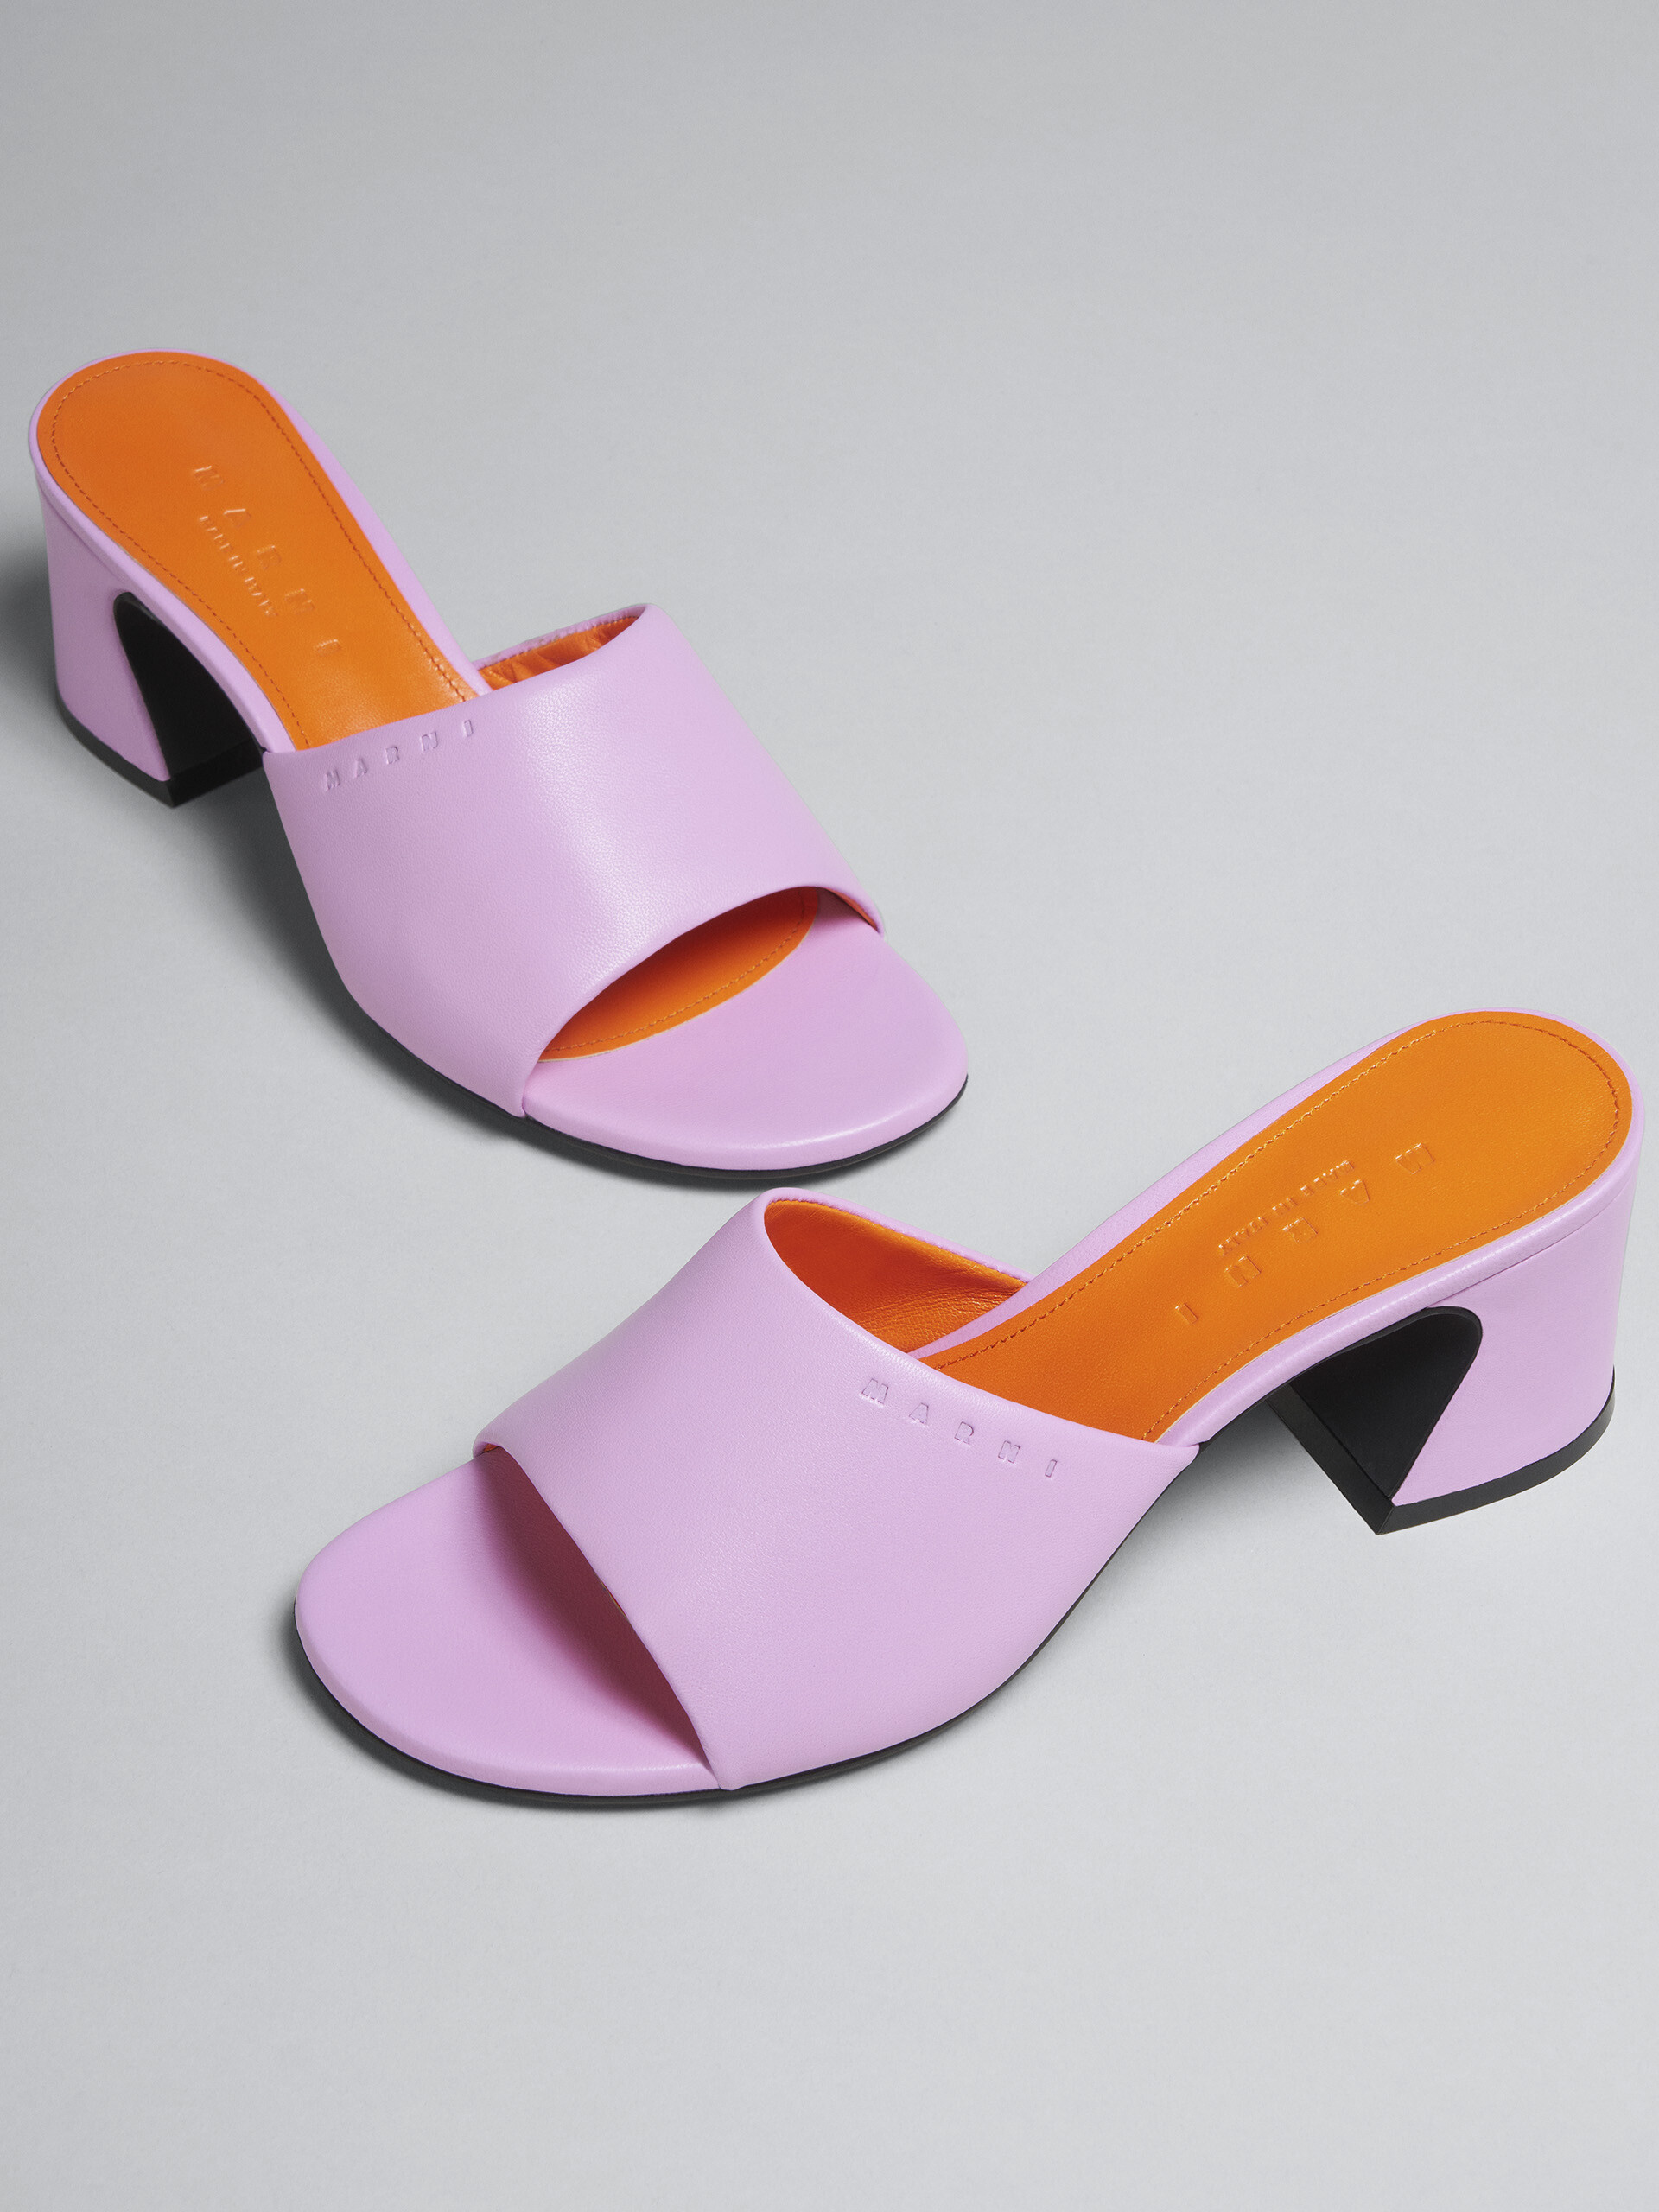 핑크 가죽 샌들 - Sandals - Image 5